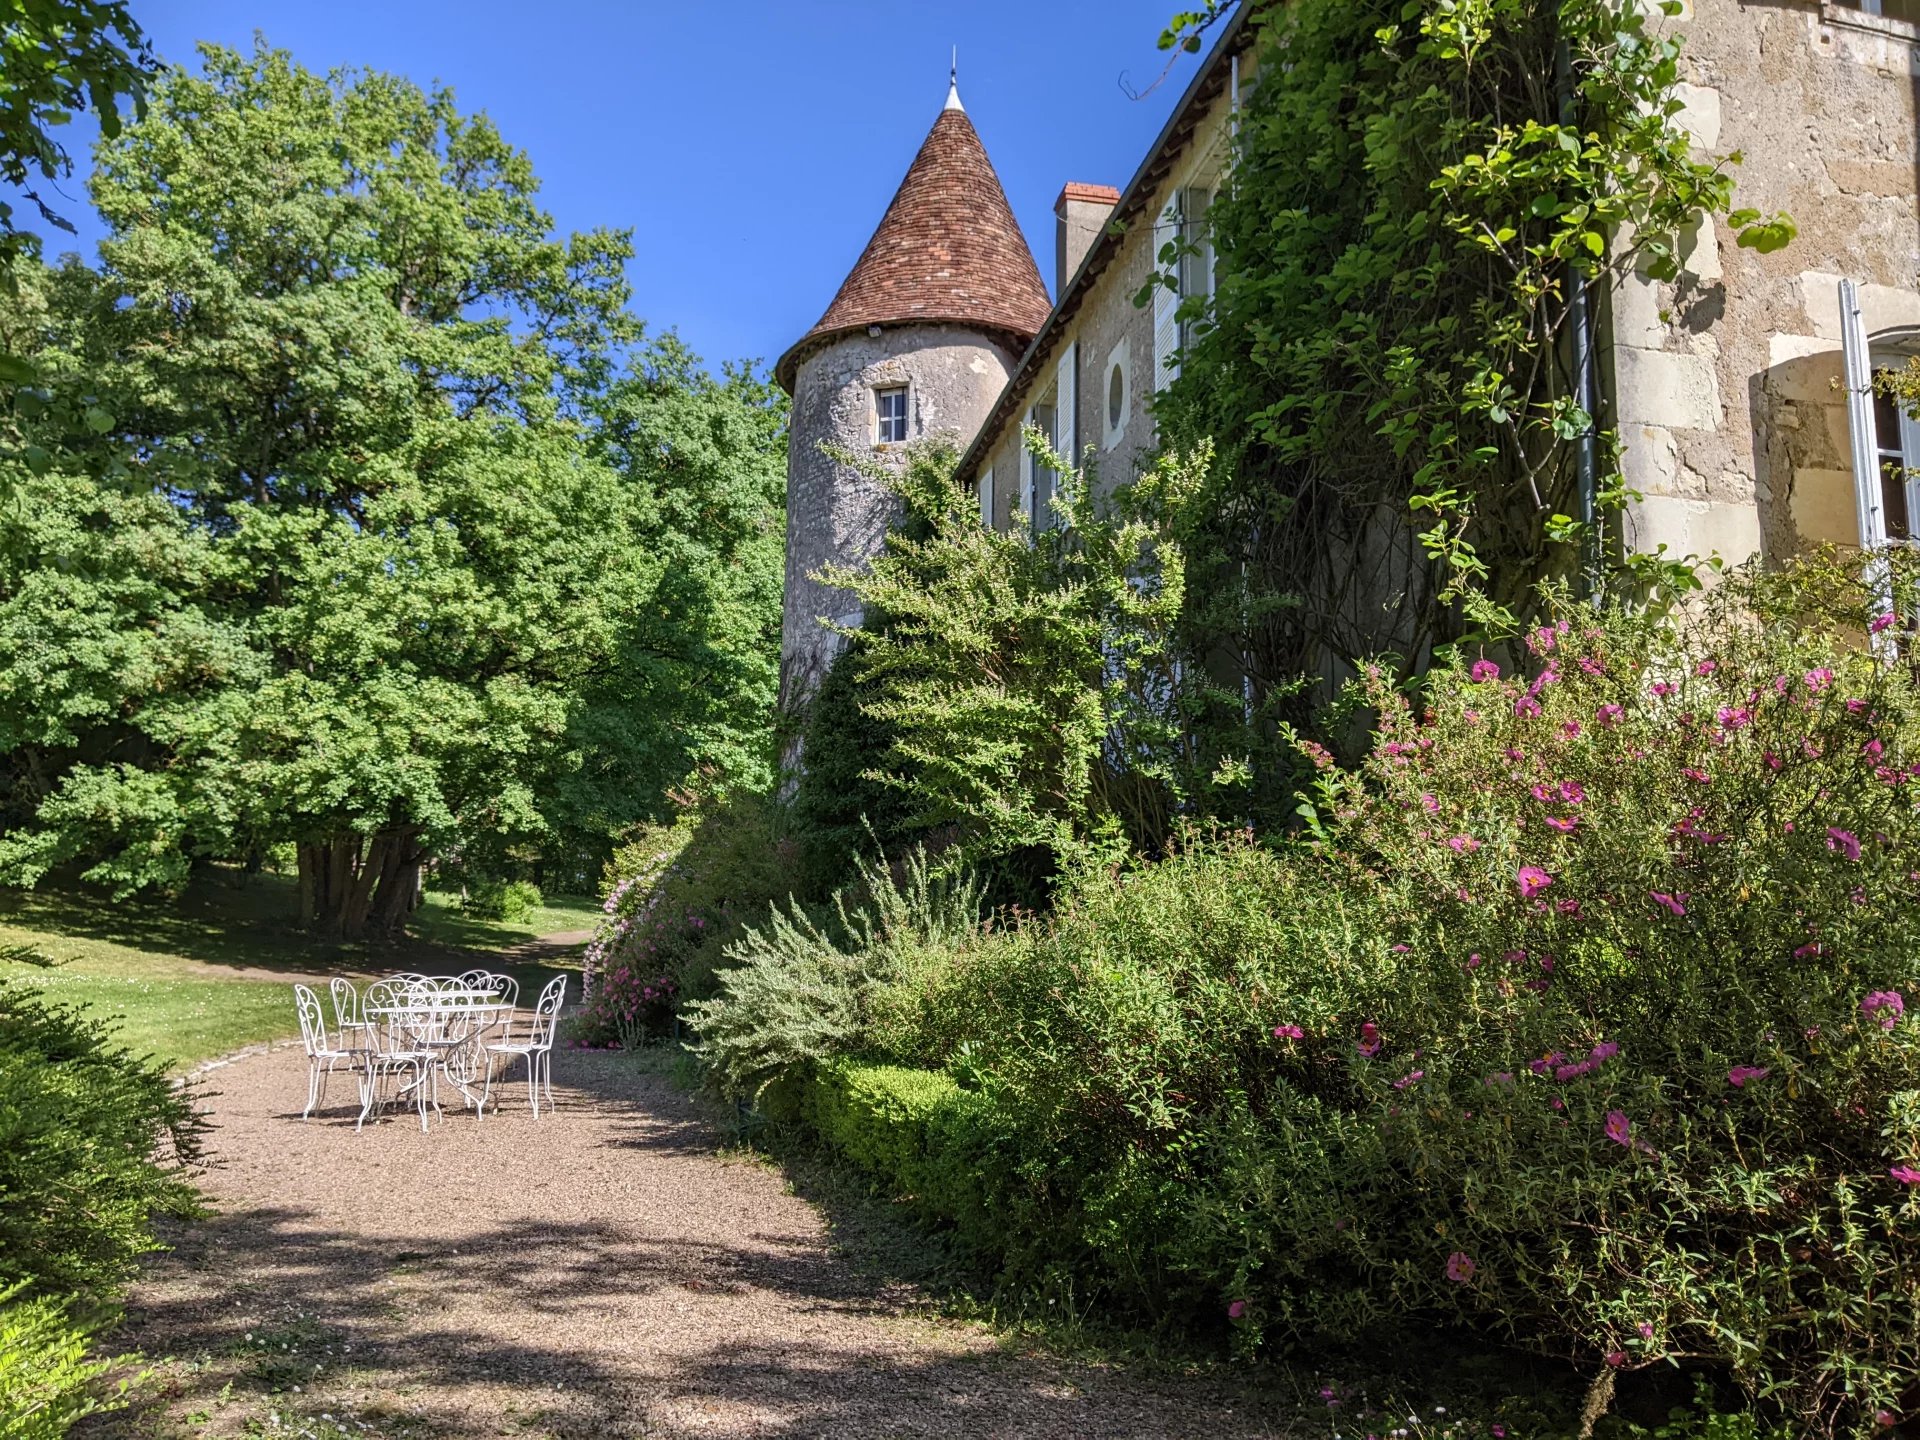 Château remarquable du 15ème siècle situé dans le parc national de la Brenne